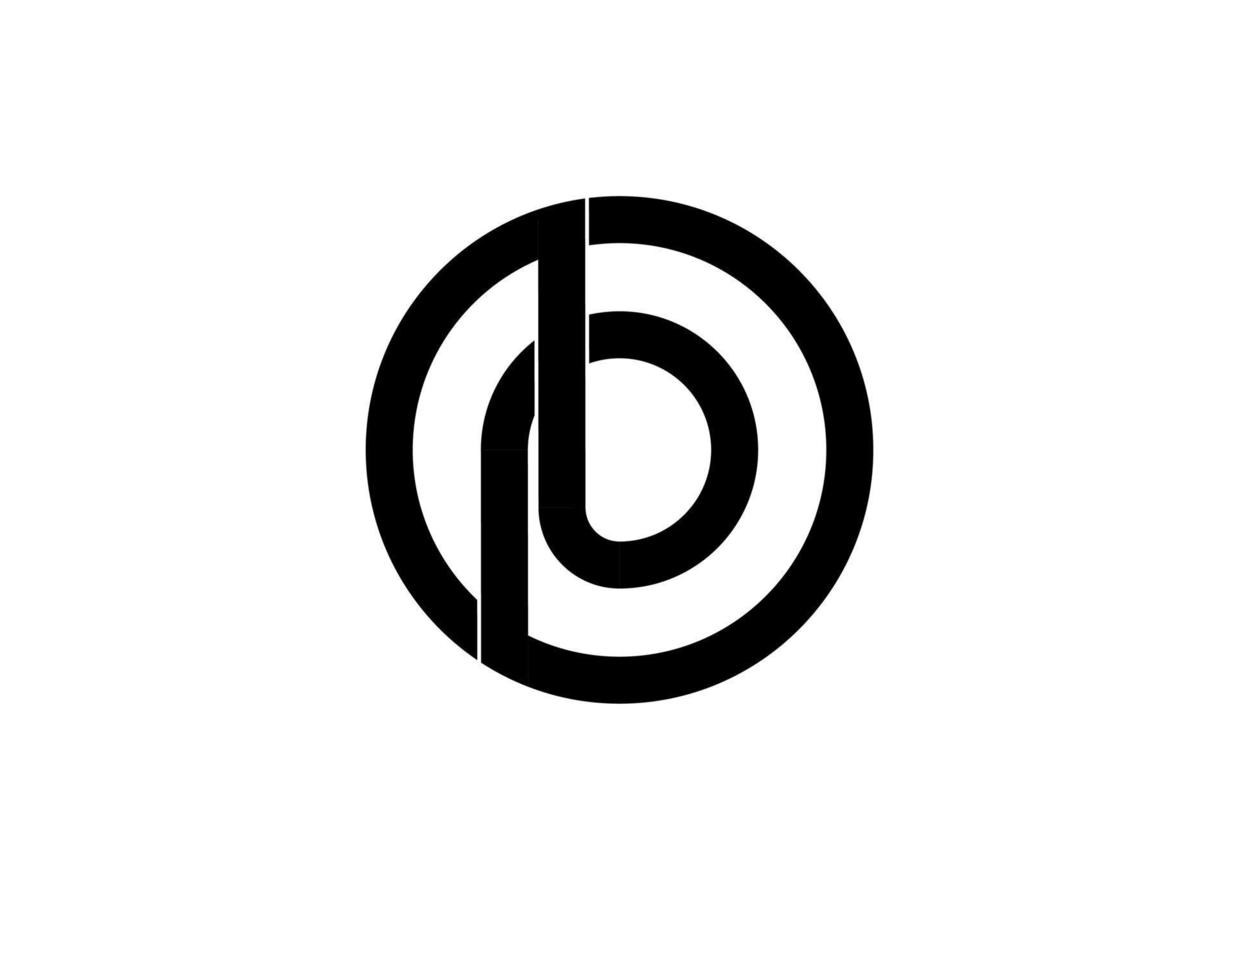 pb bp pb iniziali lettera logo isolato su sfondo bianco vettore